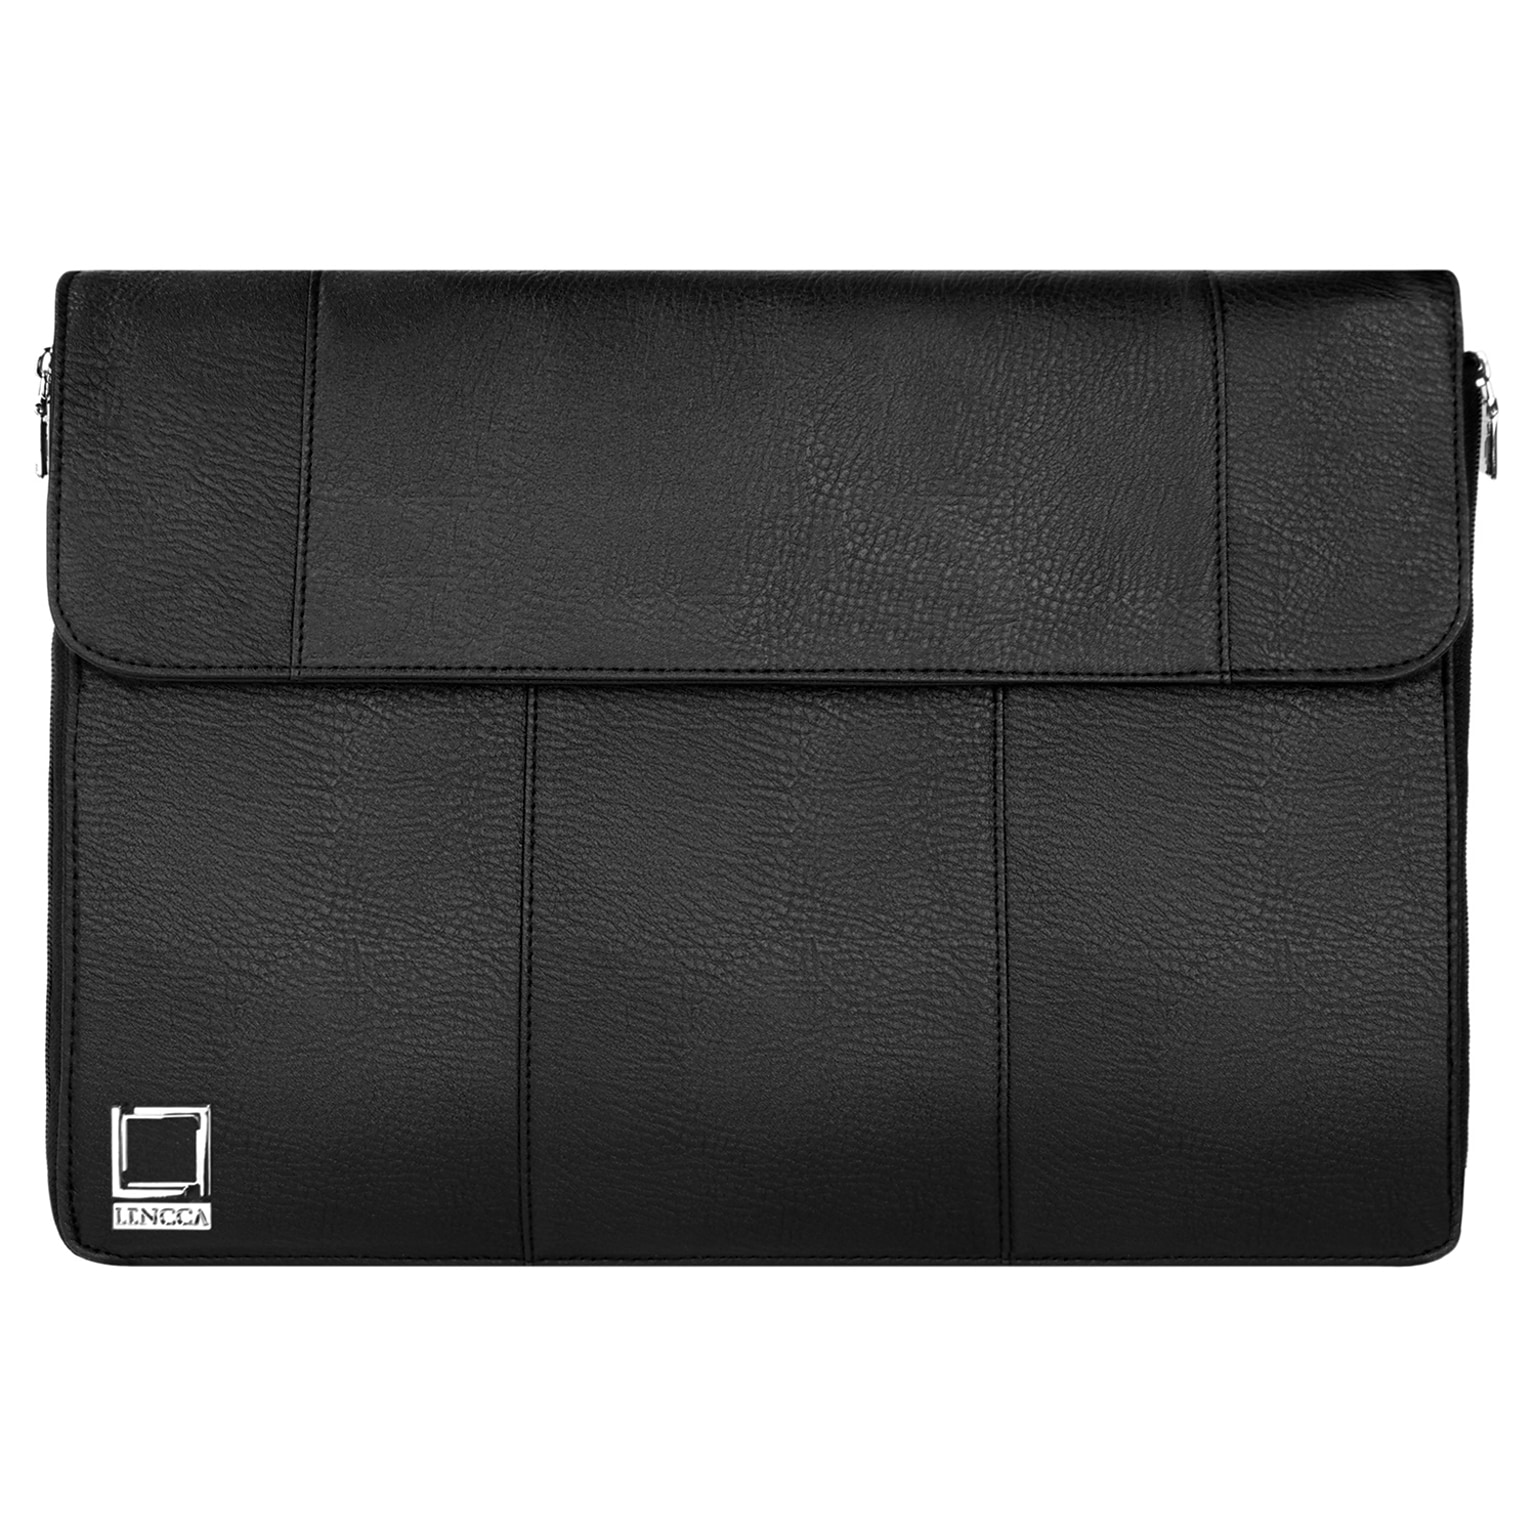 Lencca Axis Black Laptop Crossover Shoulder Bag 13.3 Inch (LENLEA321)